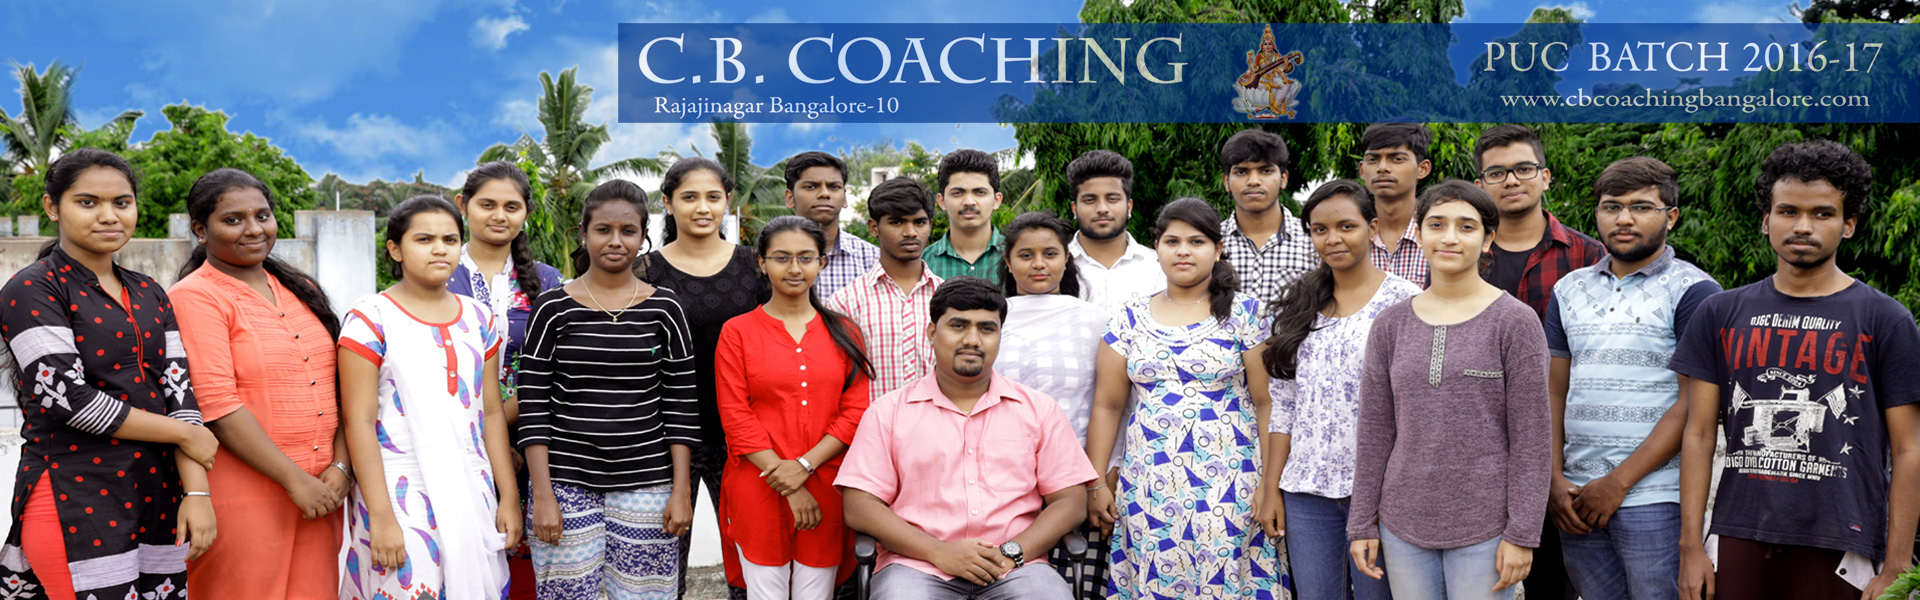 CB Coaching Bangalore